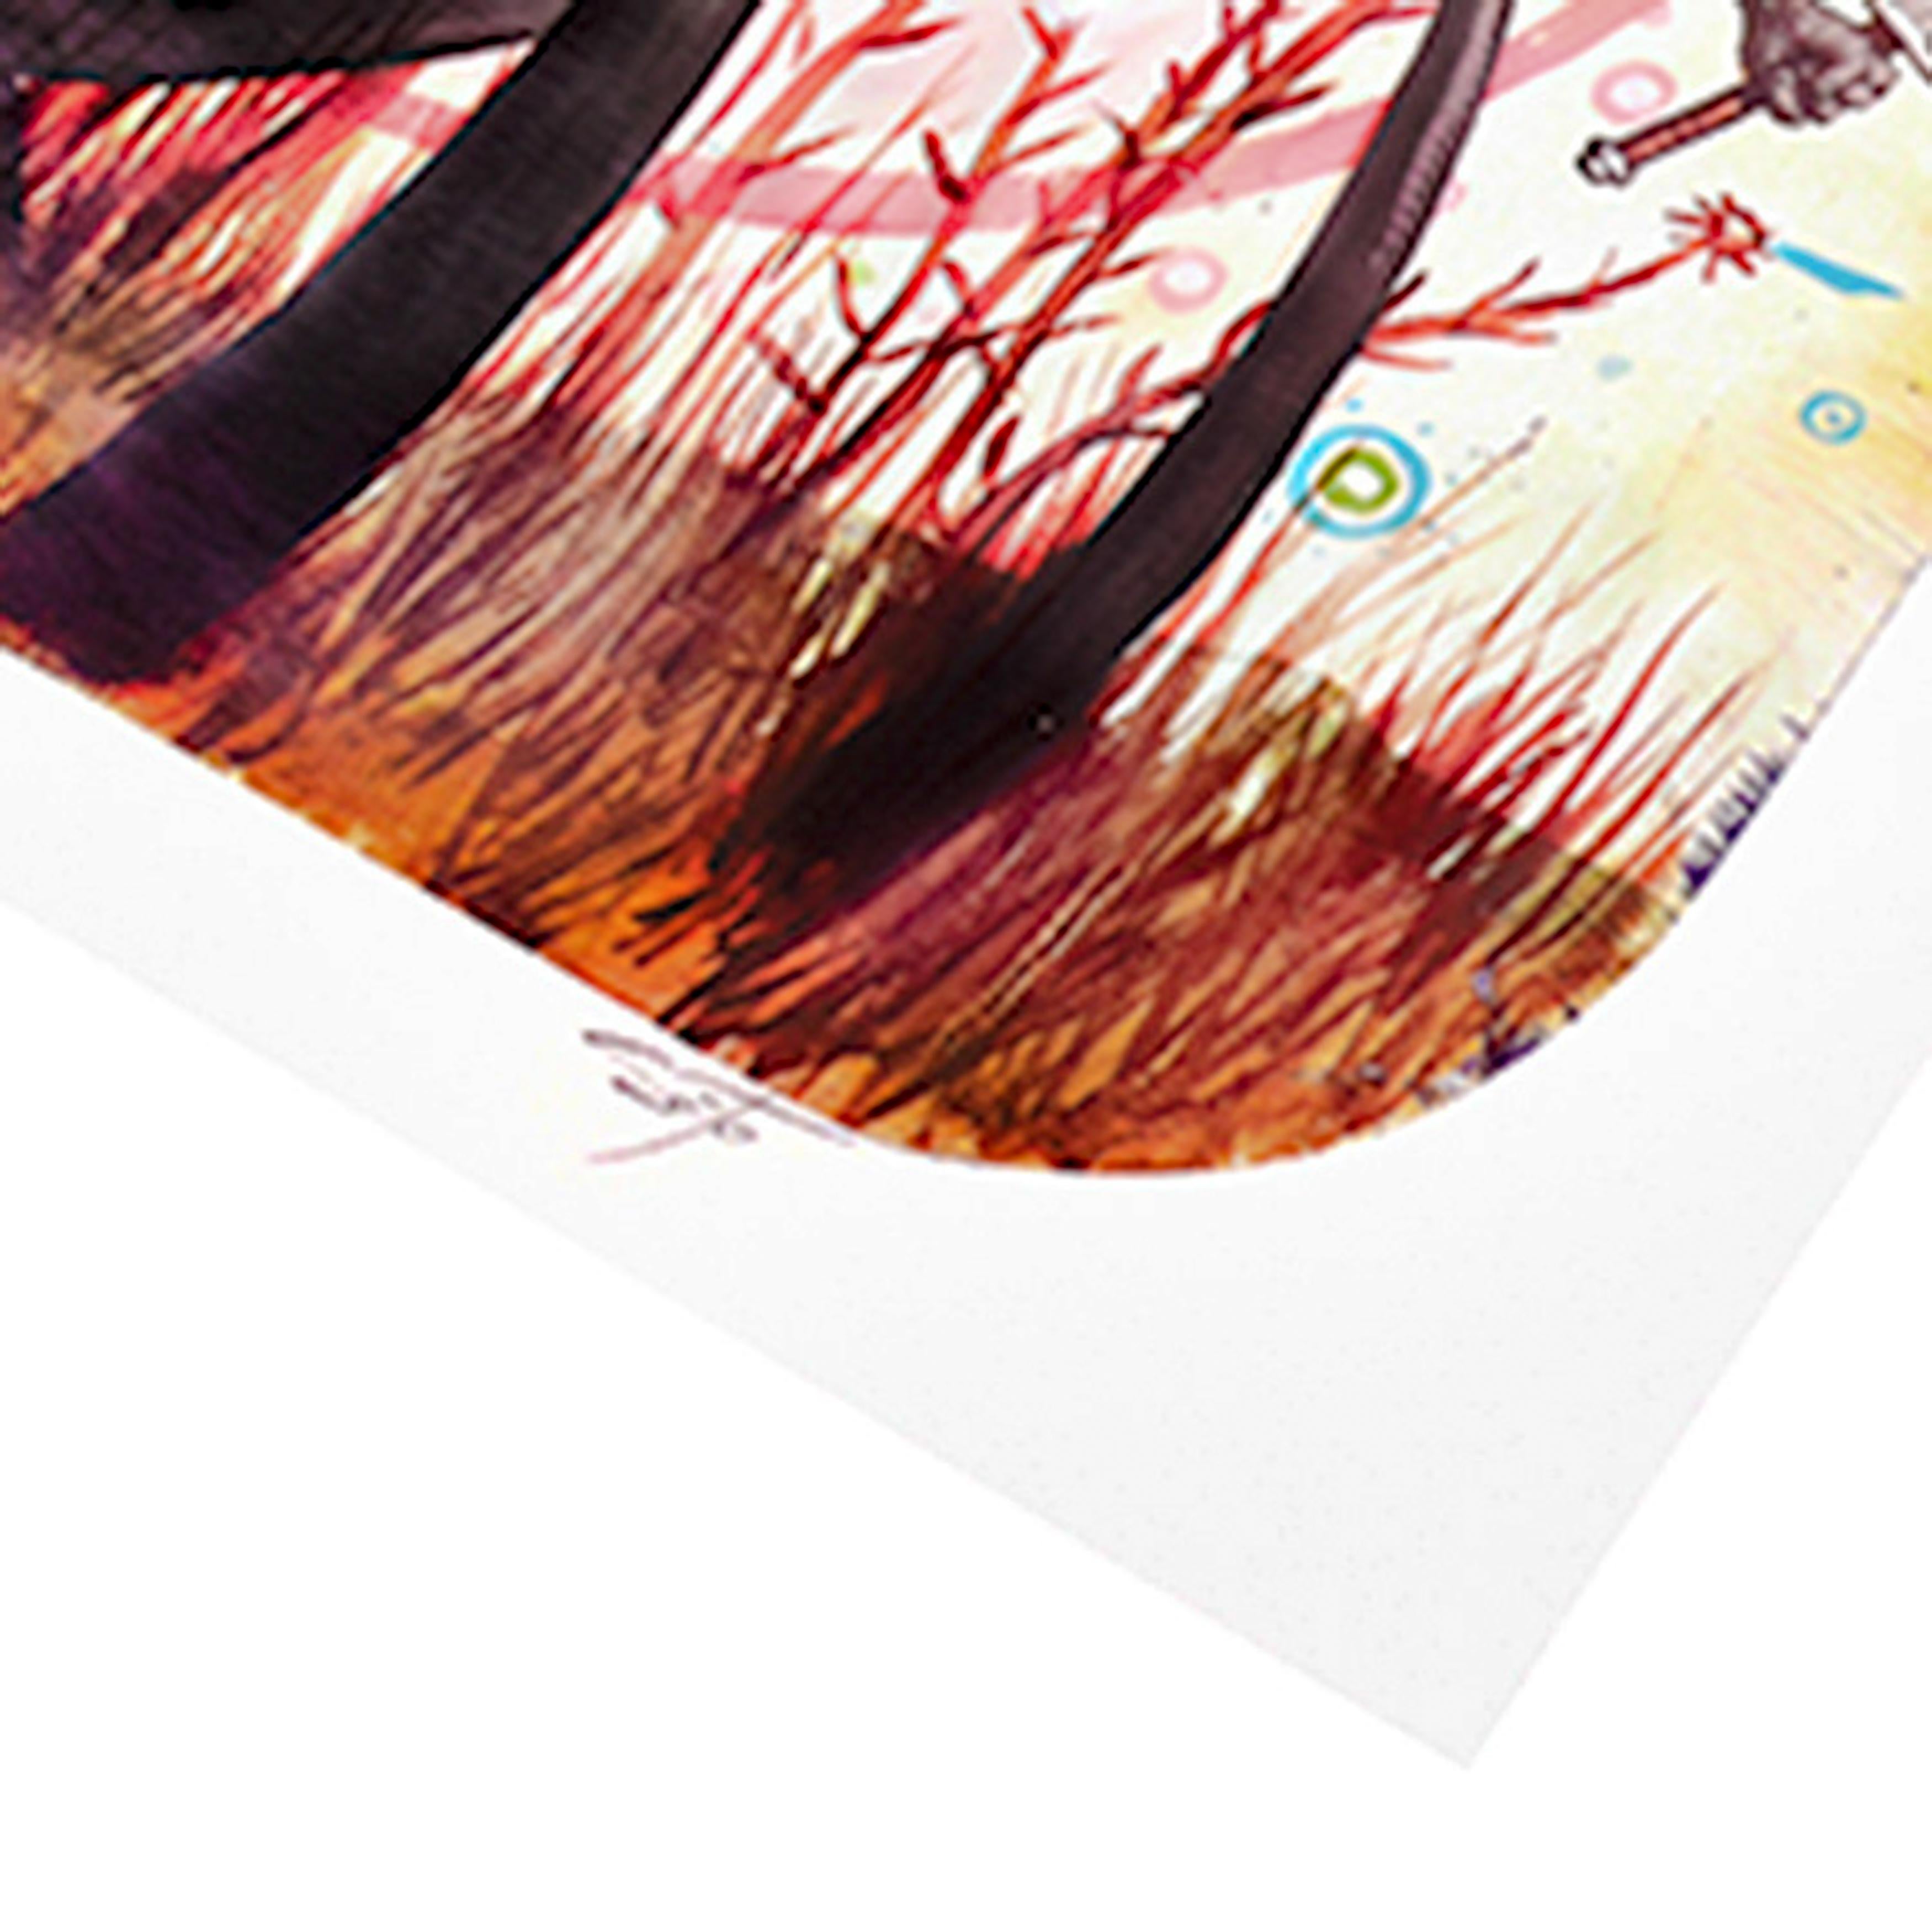 Handnummeriert und signiert von Jeff Soto.
Künstlergeprüfte Auflage von 50 Stück.
Offsetlithographie in Farben.
Gedruckt auf mattem Patina-Papier.
Artists Proofs werden auch als APs bezeichnet und sind noch stärker limitiert als die Standardausgabe.